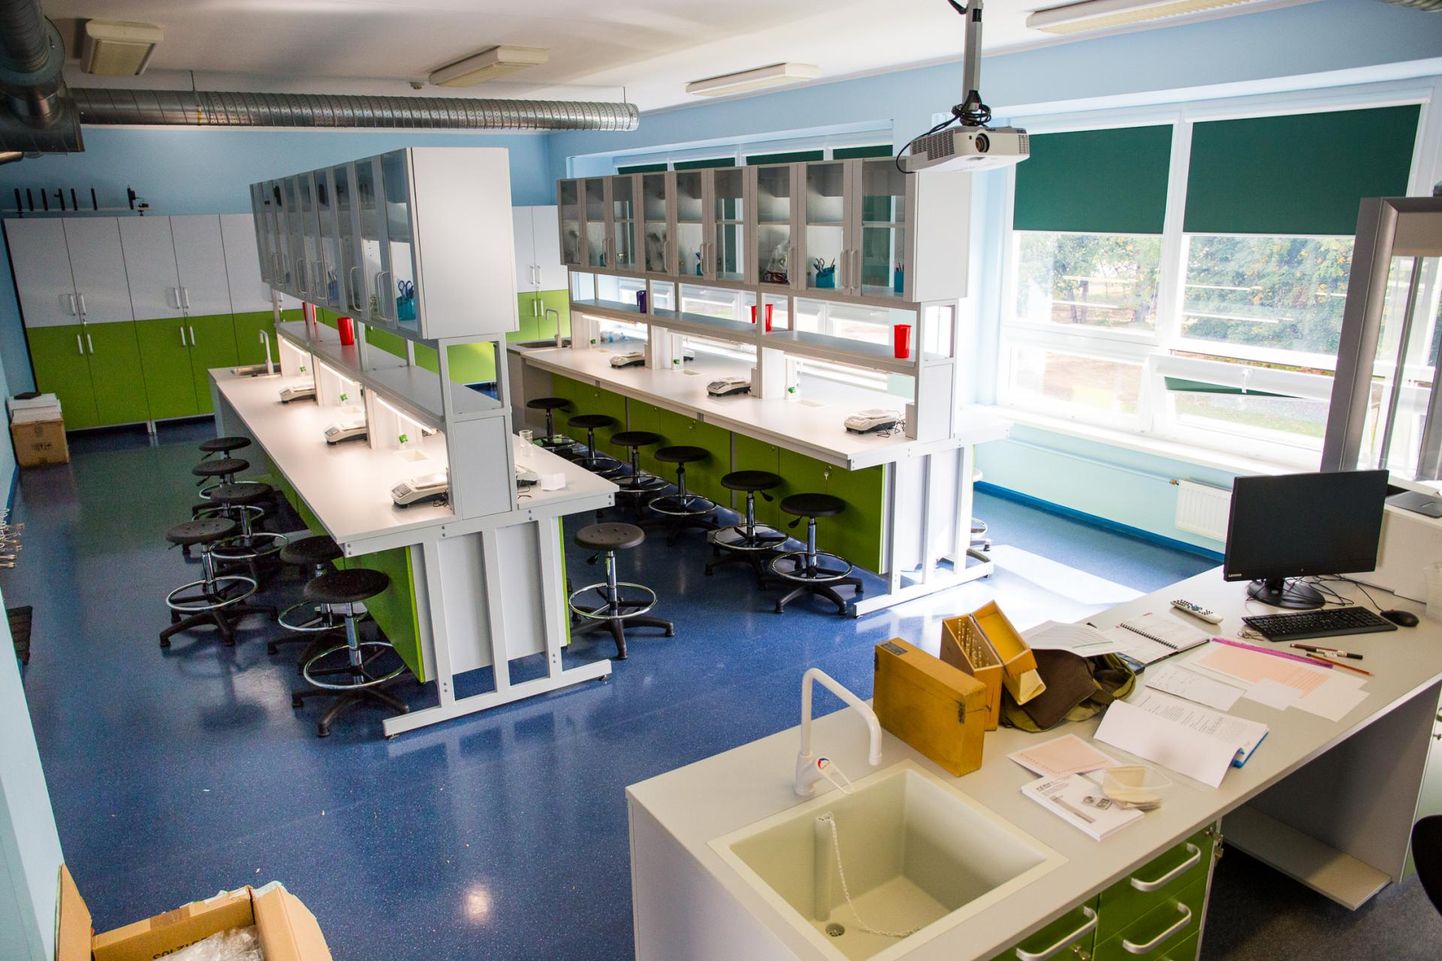 Mõni aasta tagasi avati Väike-Maarja gümnaasiumis uhke labor, mille abil saab õppimise muuta mitmekesisemaks ja kvaliteetsemaks.